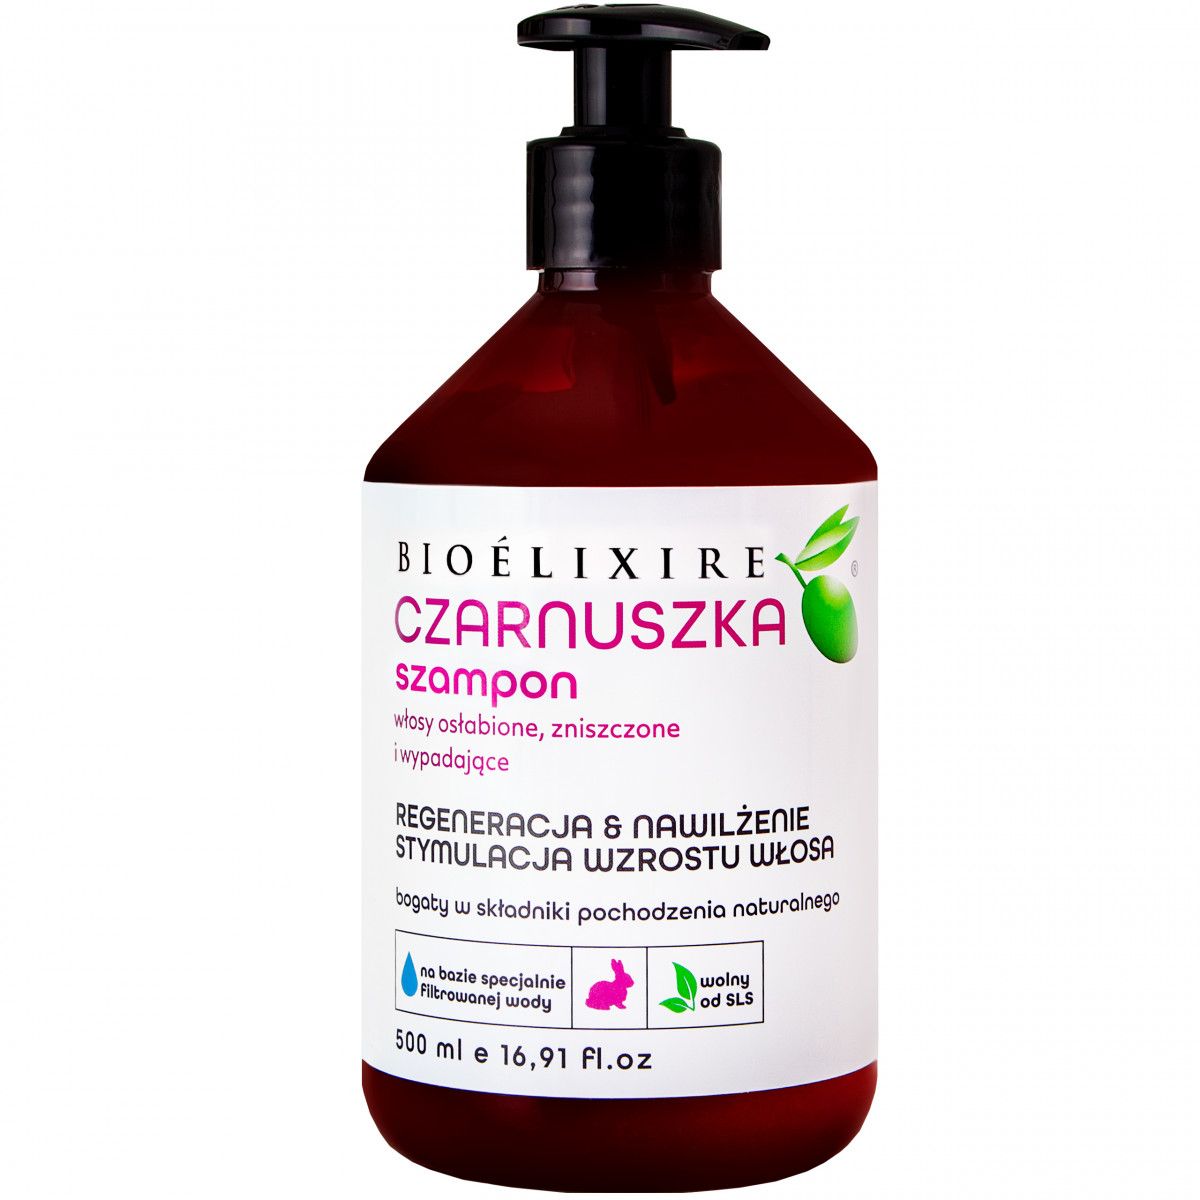 olivolio szampon naprawczy z biotyną włosy suche